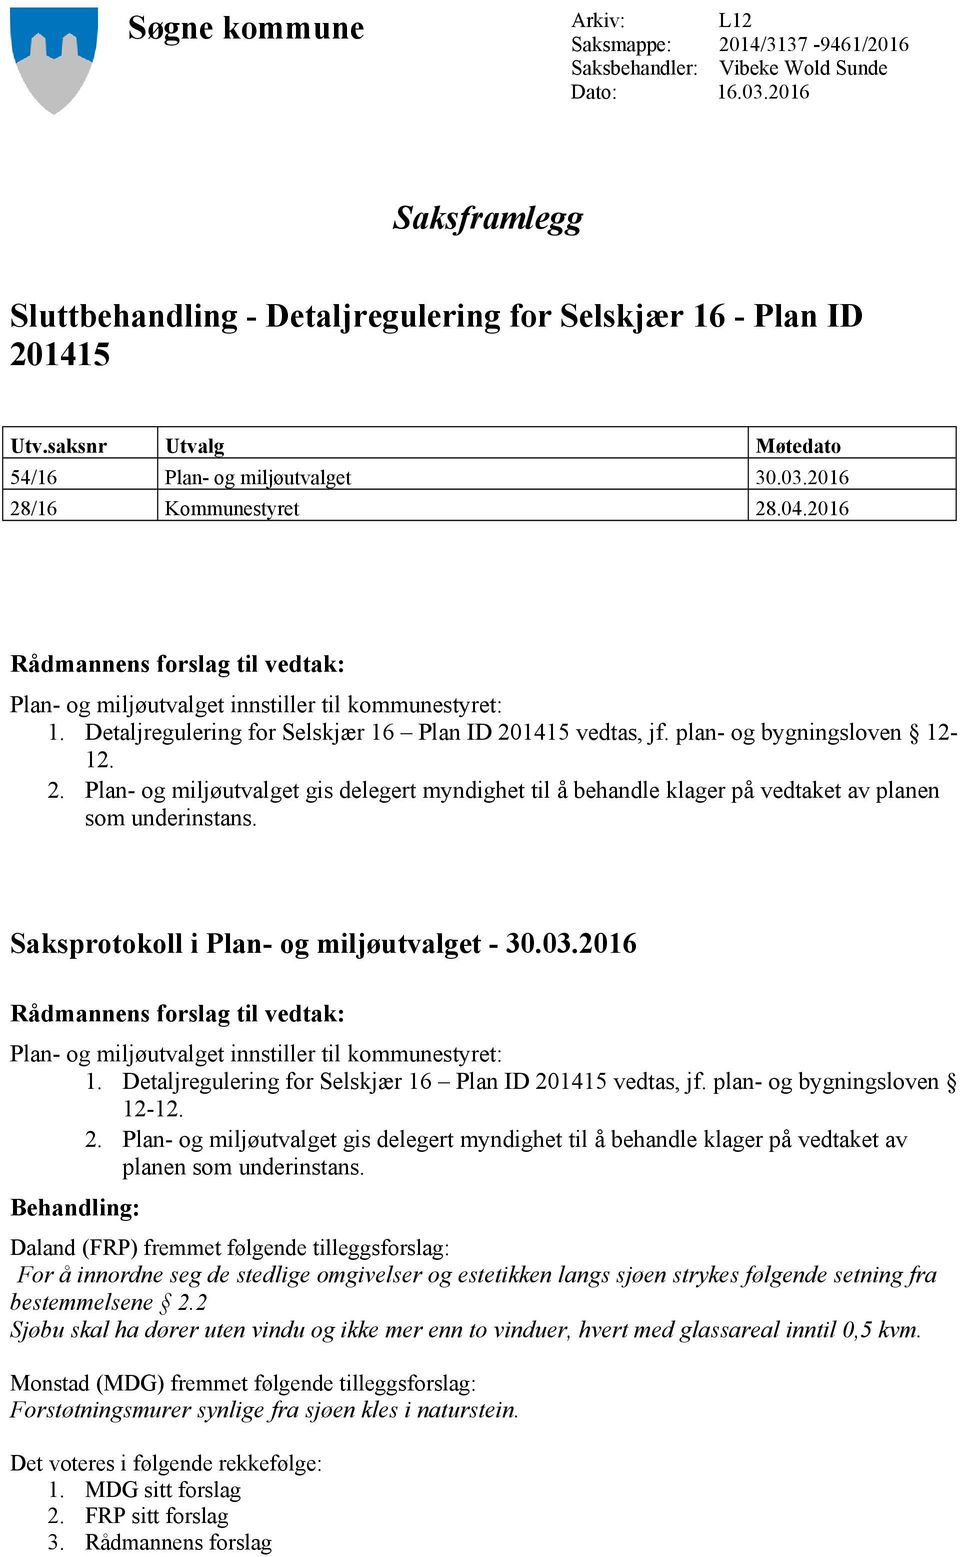 Detaljregulering for Selskjær 16 Plan ID 201415 vedtas, jf. plan- og bygningsloven 12-12. 2. Plan- og miljøutvalget gis delegert myndighet til å behandle klager på vedtaket av planen som underinstans.